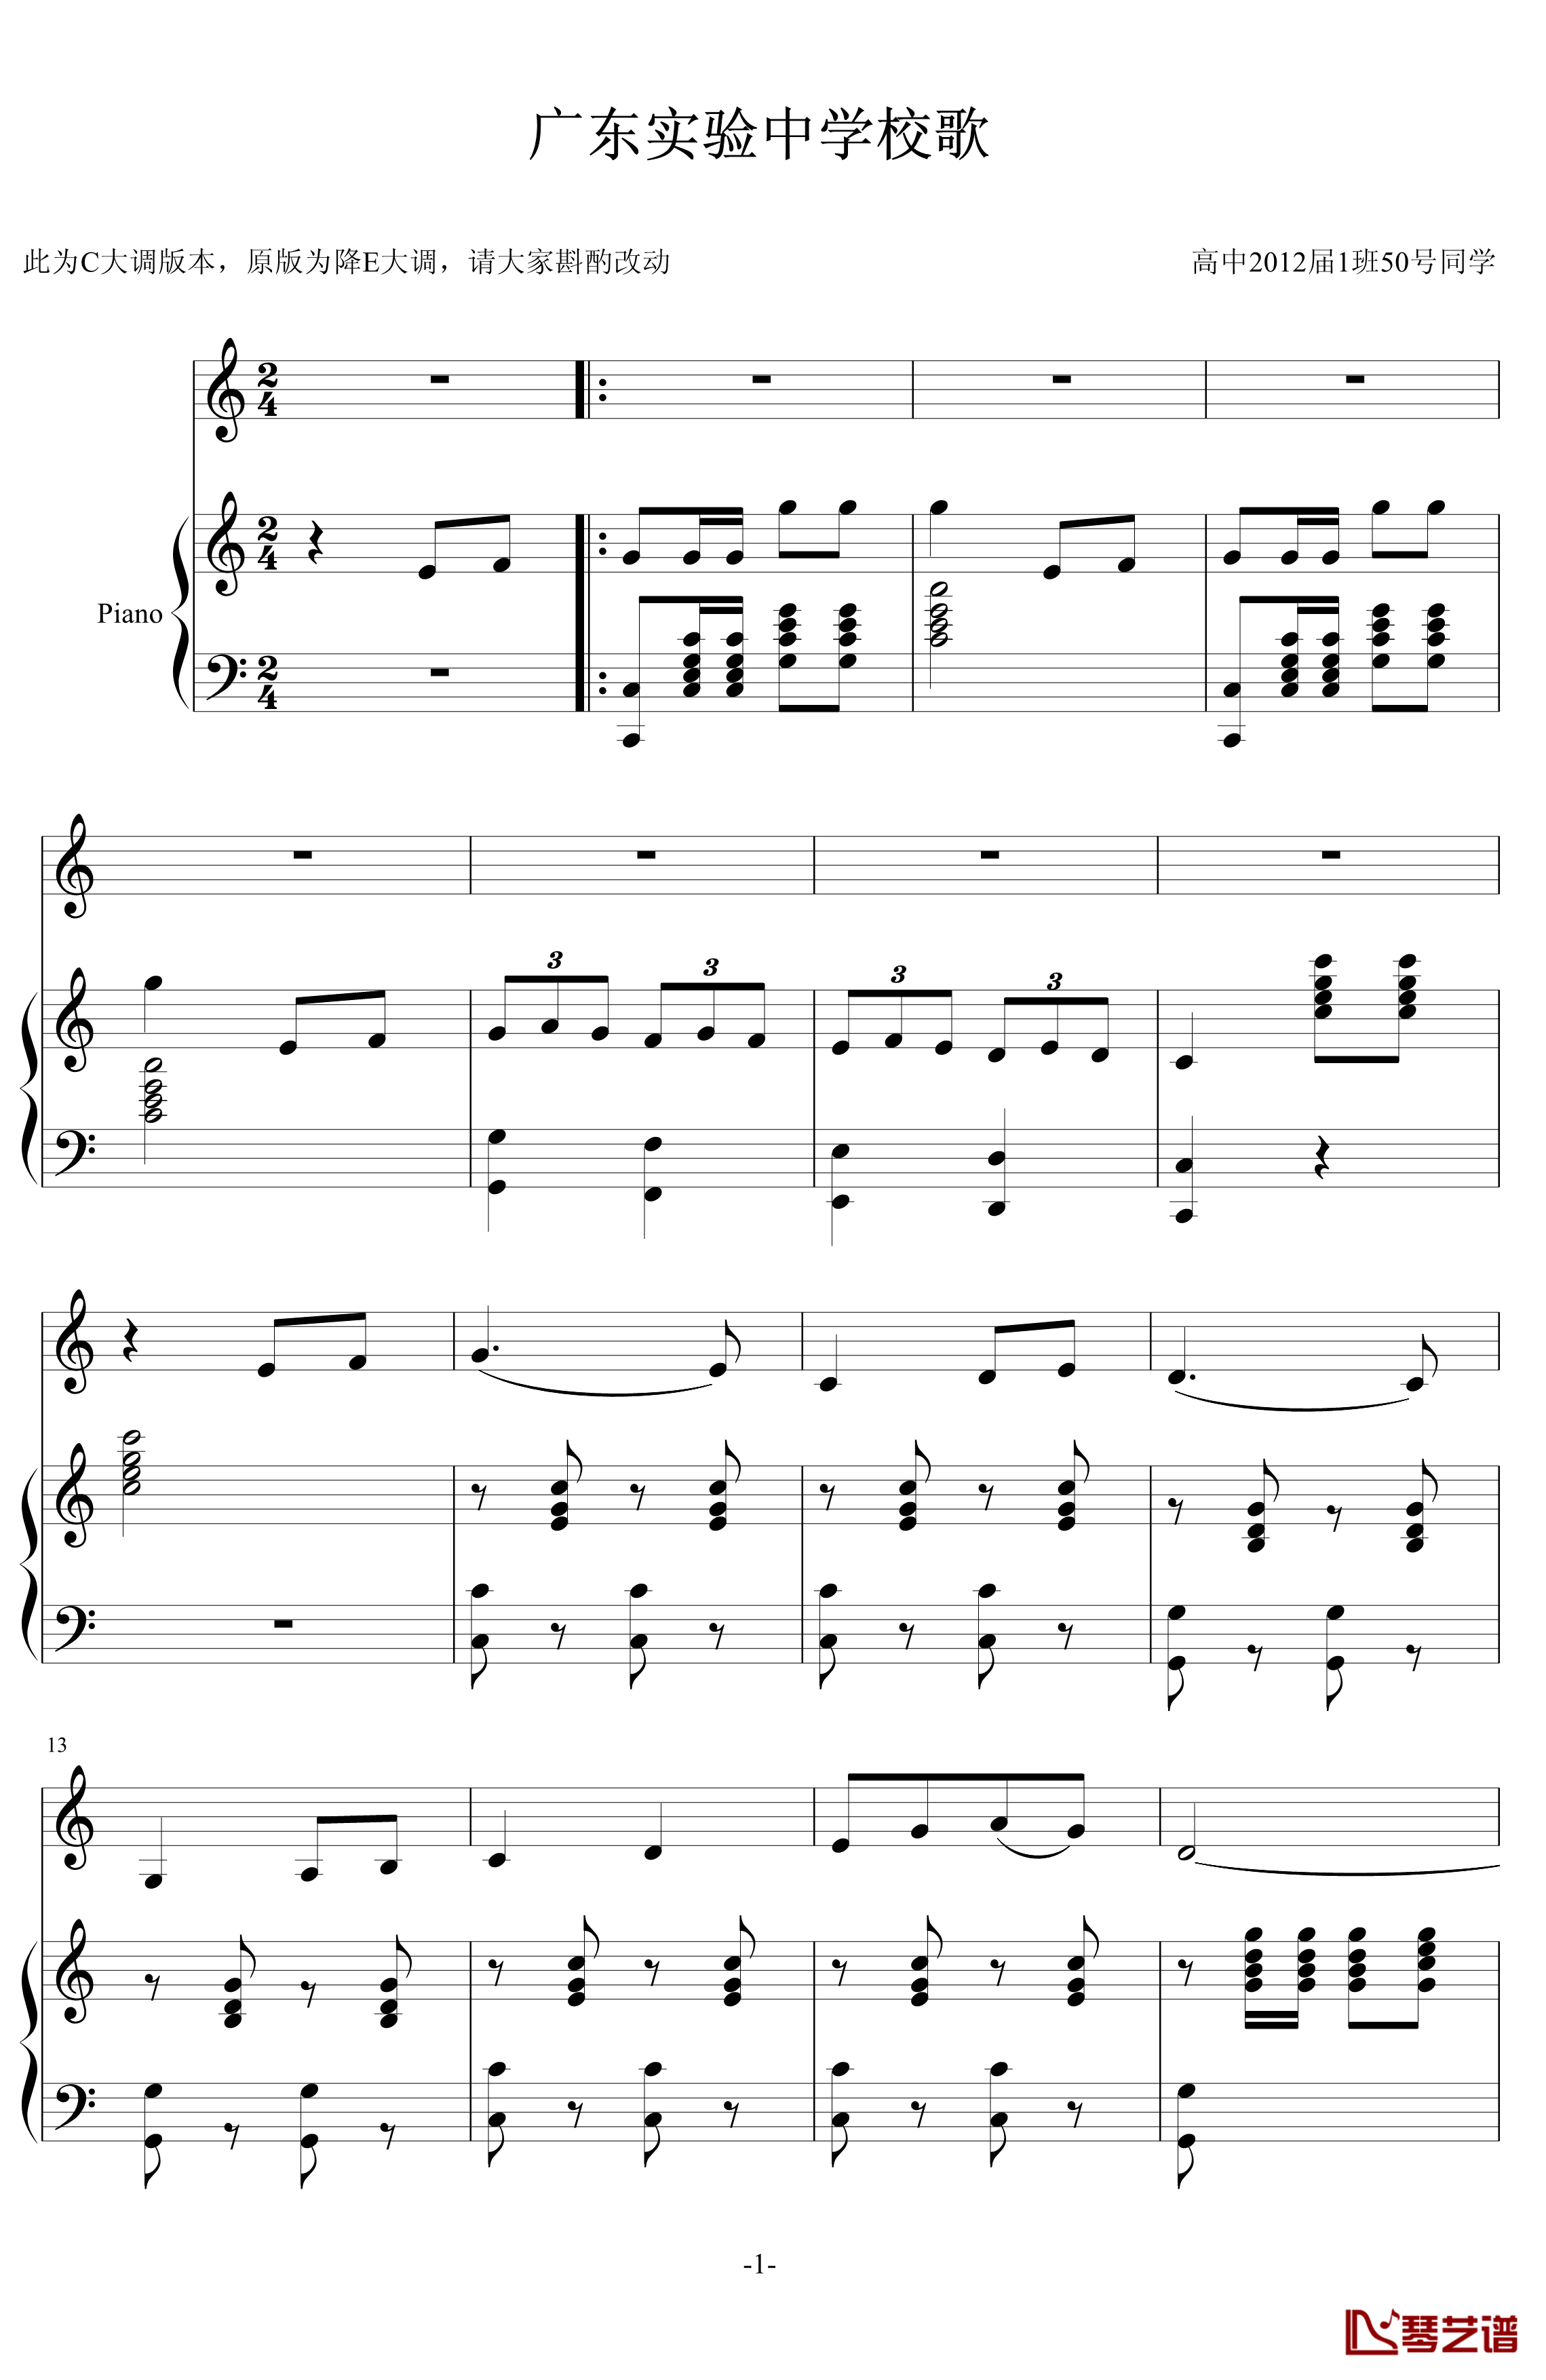 广东实验中学校歌钢琴谱-中国名曲1